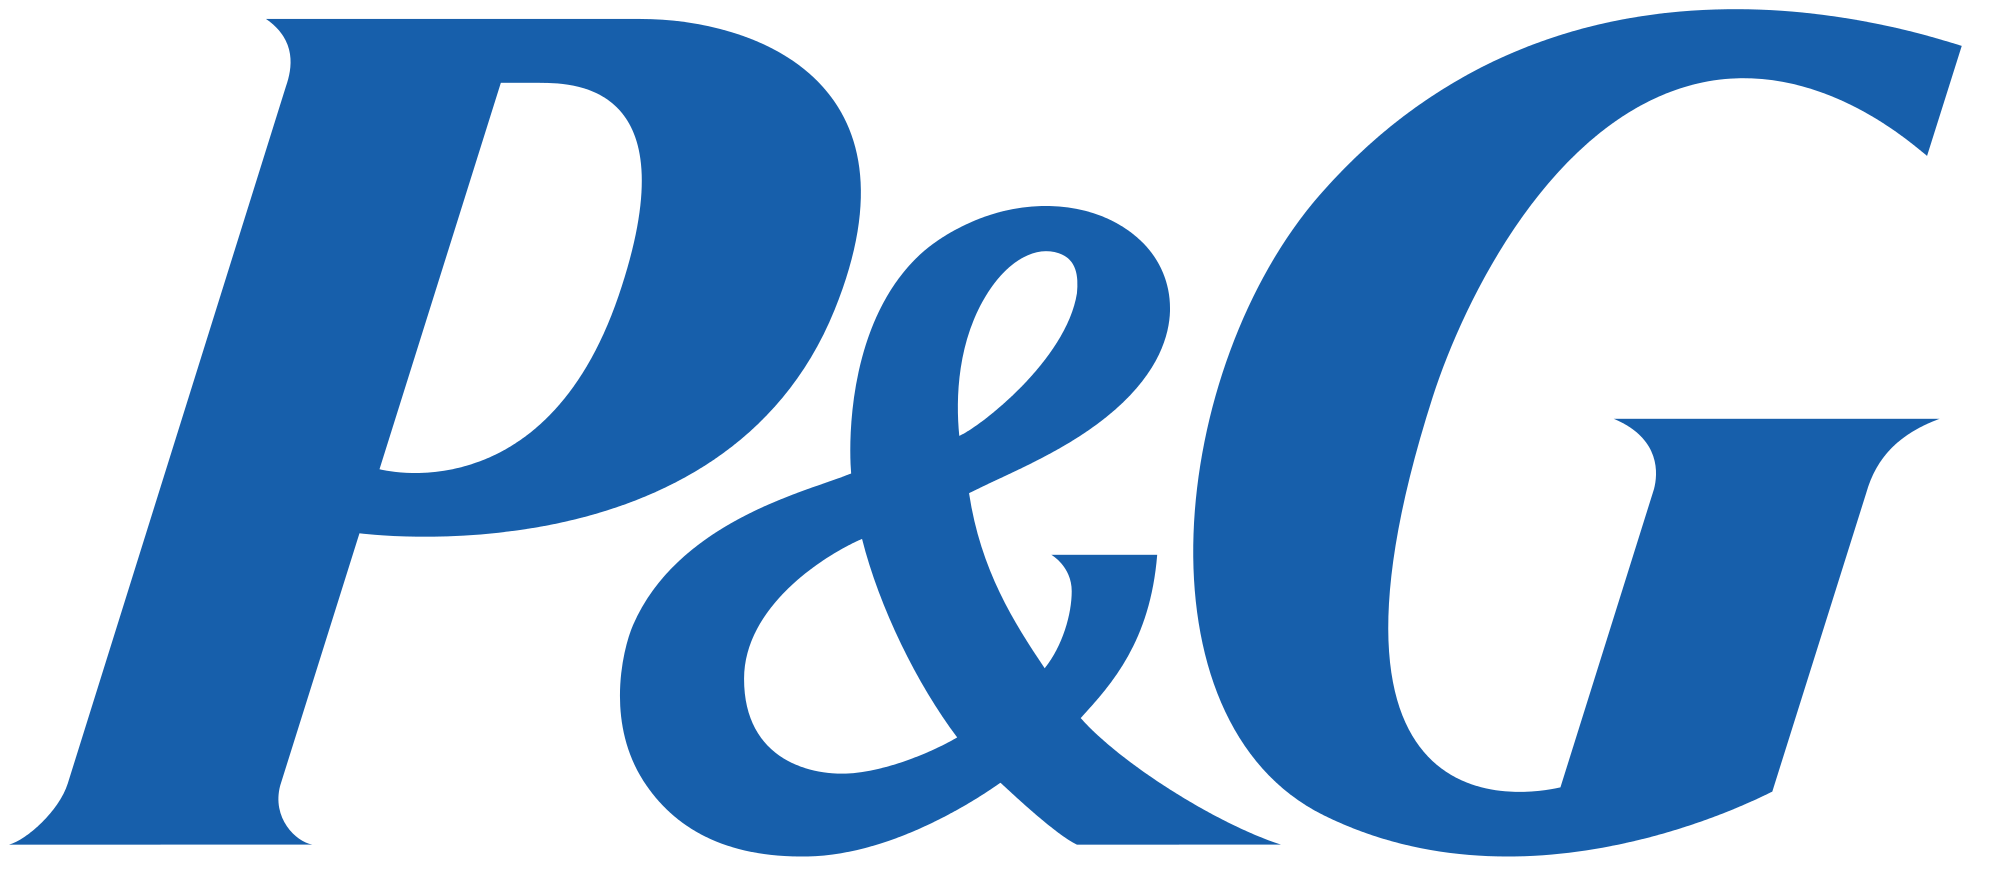 Protector and Gamble Logo